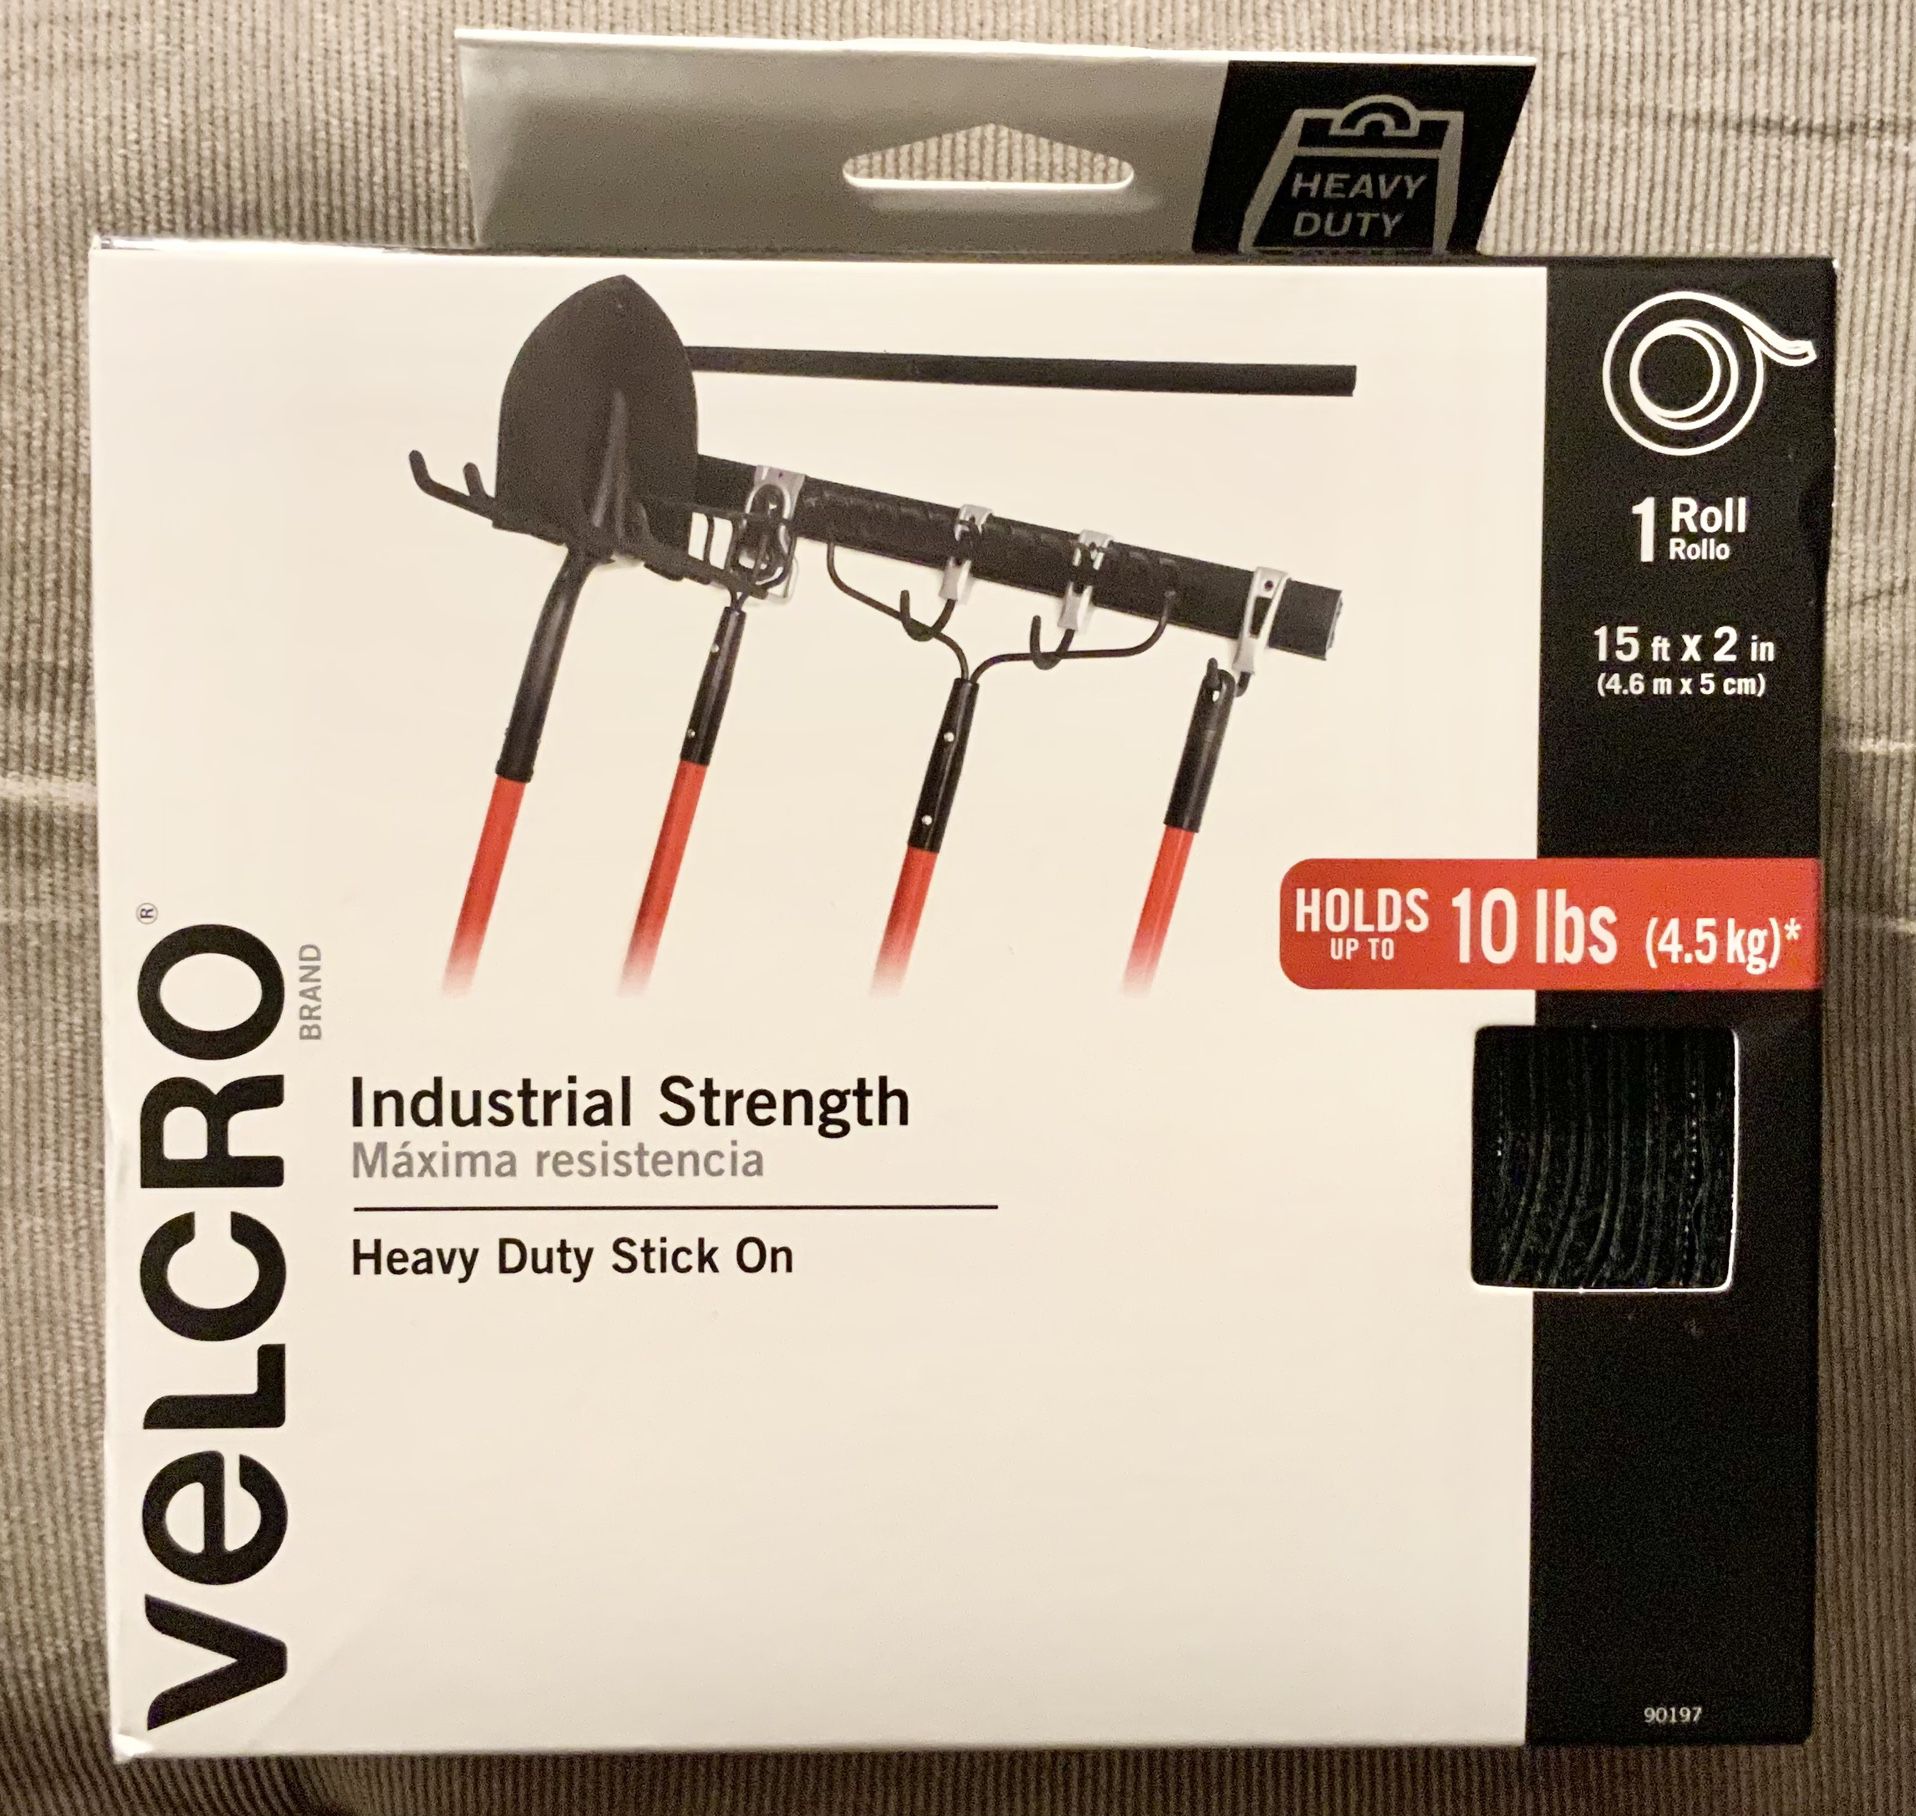 New** Velcro Industrial Heavy Duty Stick On (1 Roll) 